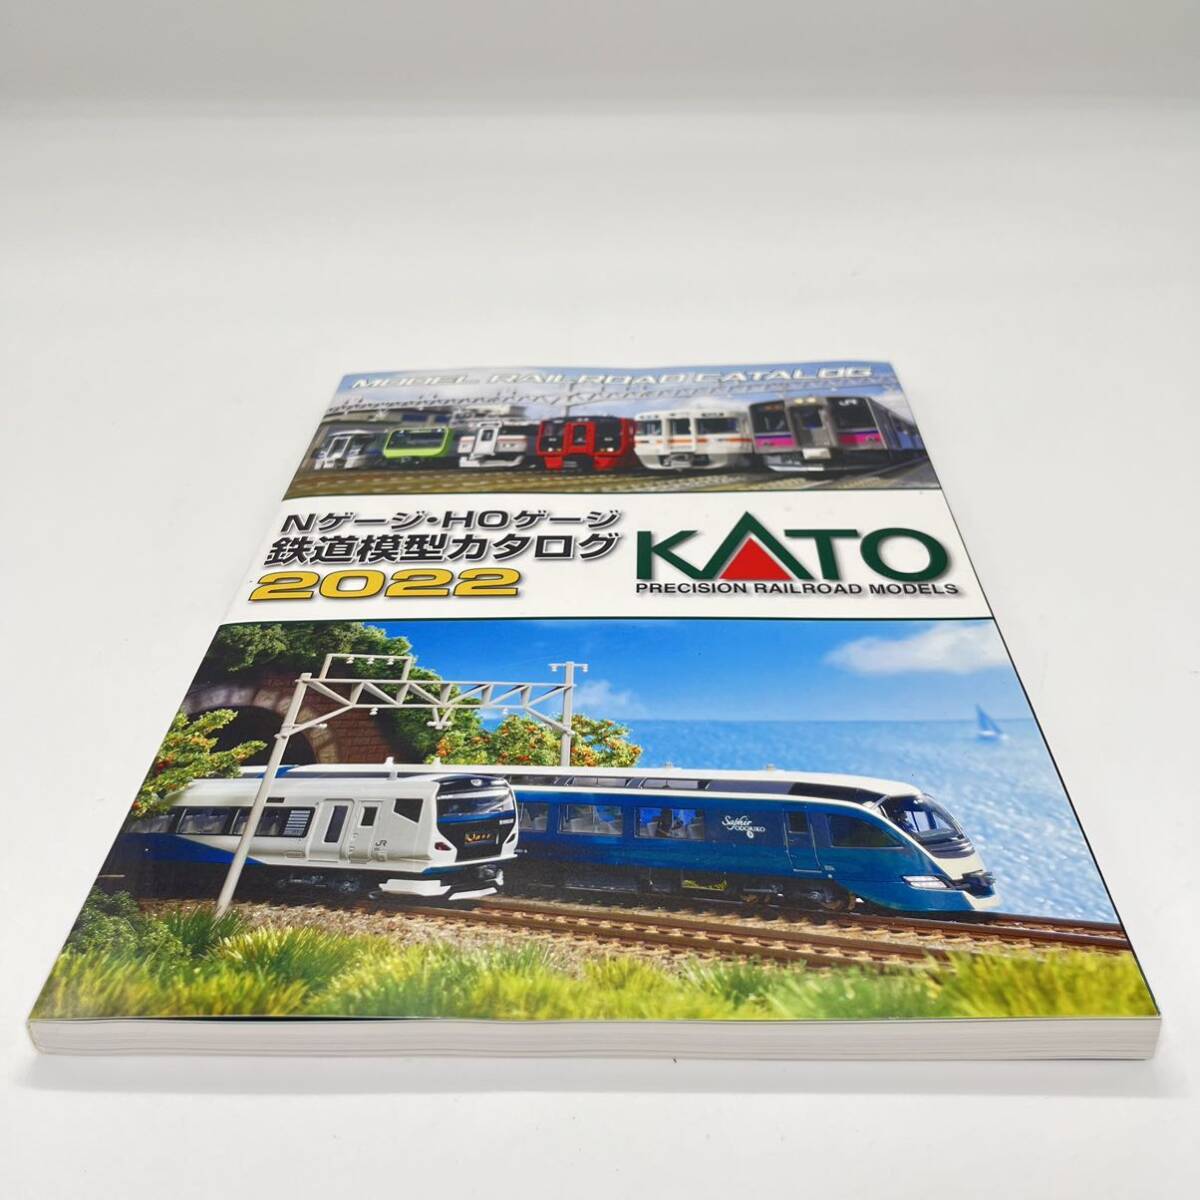 KATO Nゲージ HOゲージ 鉄道模型カタログ 2022 ジオラマ ストラクチャー 関水金属_画像3